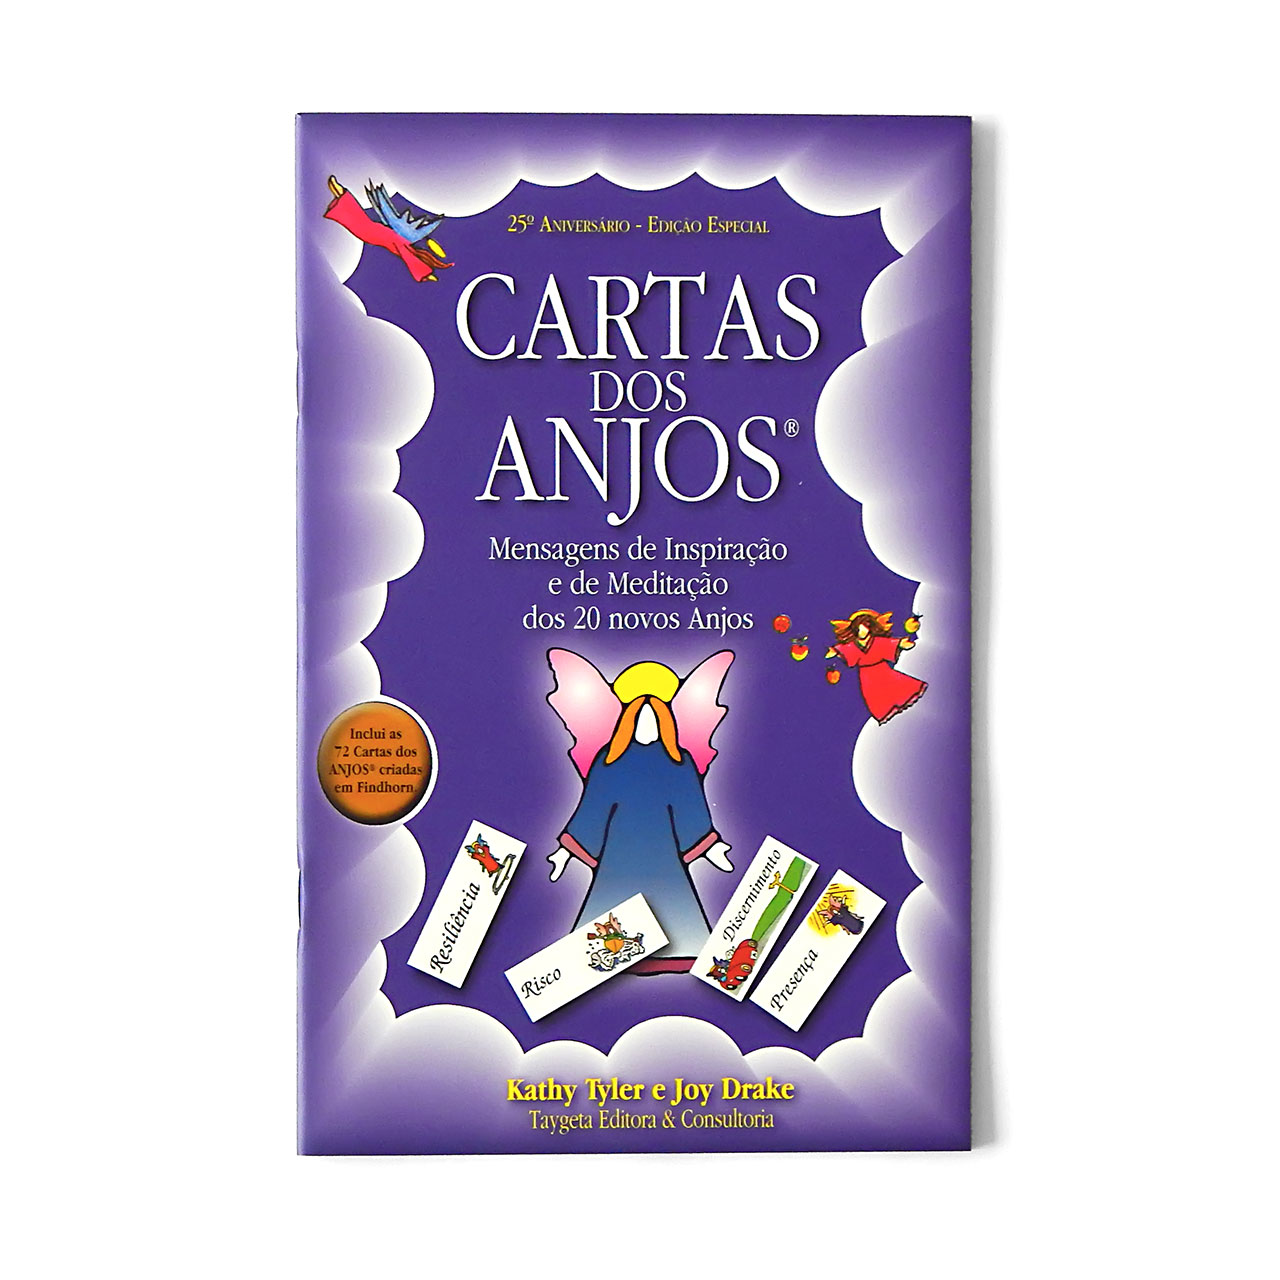 Cartas dos Anjos® - Loja Taygeta Editora e Consultoria